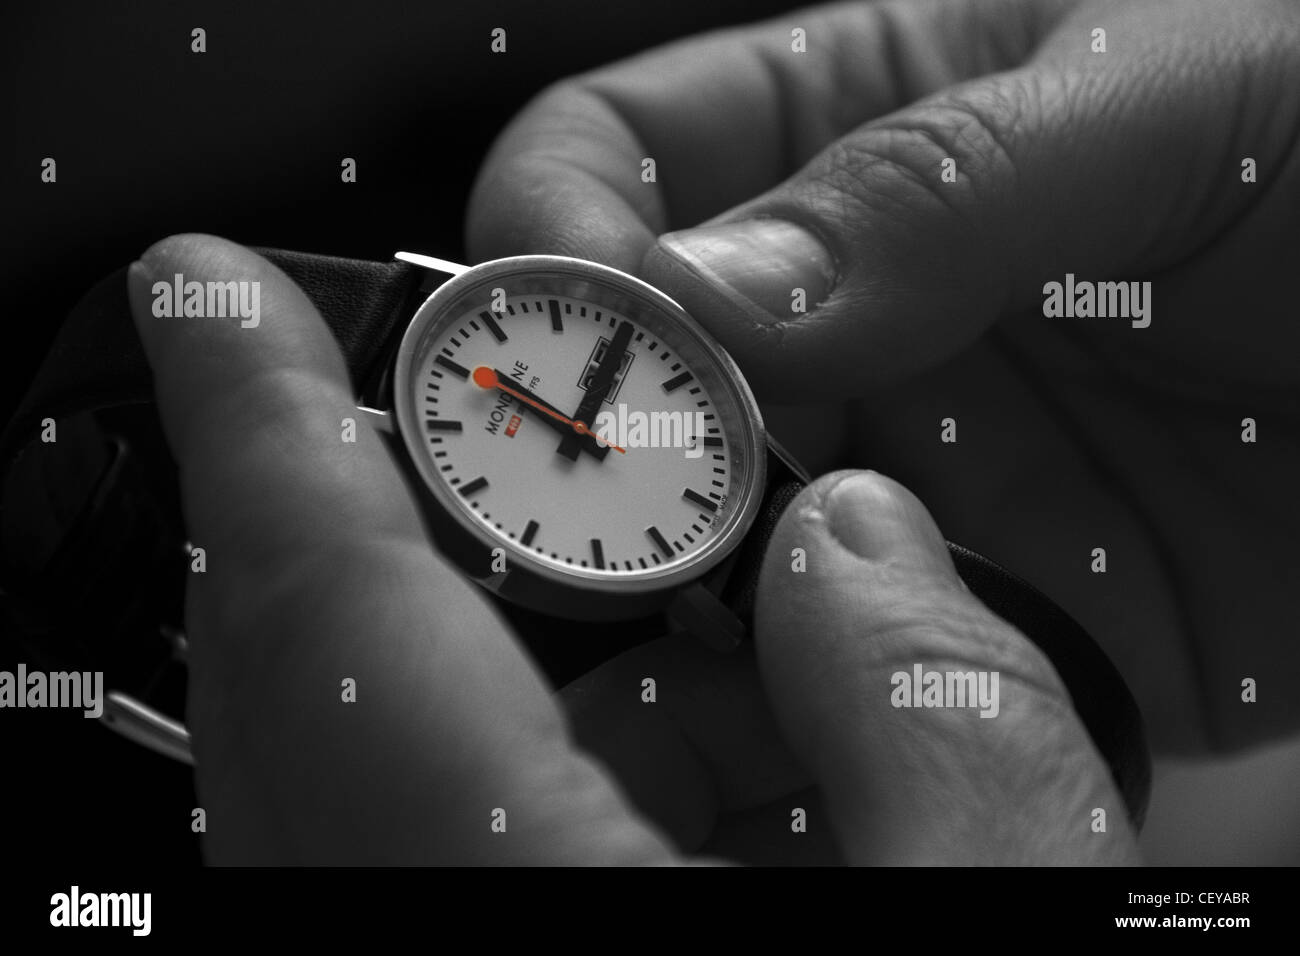 Reimpostazione di un orologio per l'ora legale o British Summer Time BST da uno ora in marzo e ottobre. Foto Stock